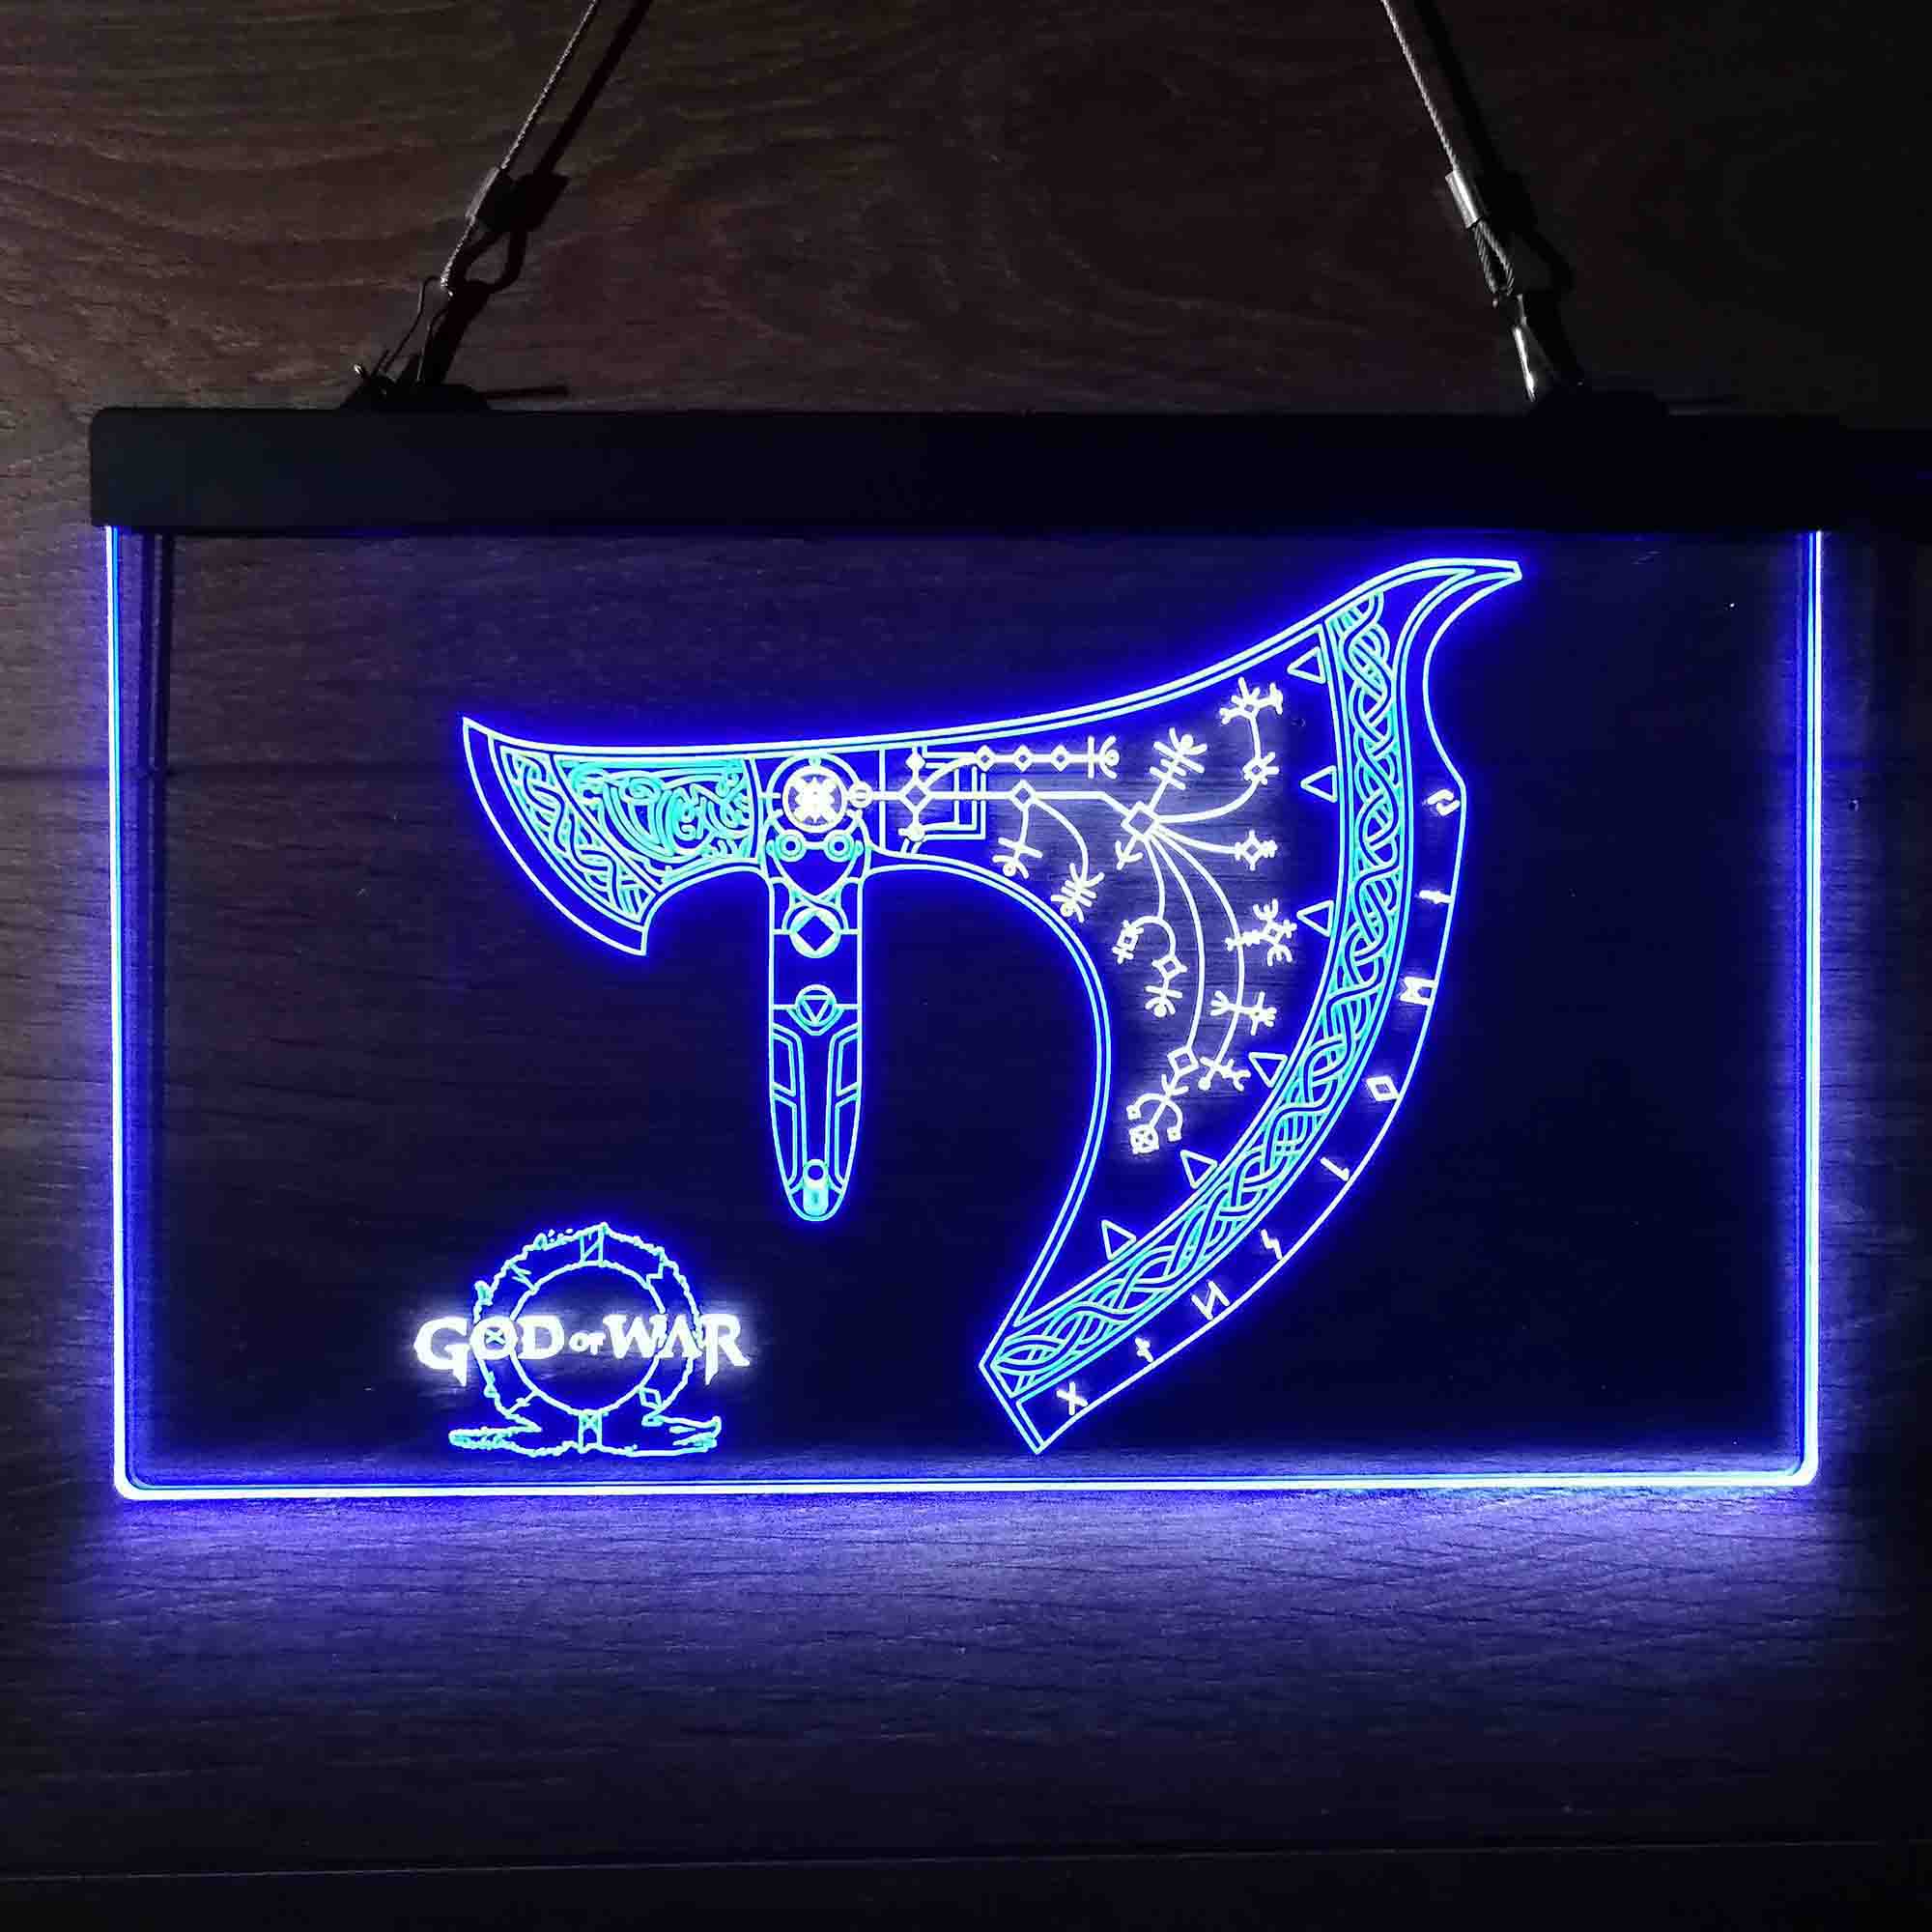 God of War Krato Axe Game Room Neon Light LED Sign